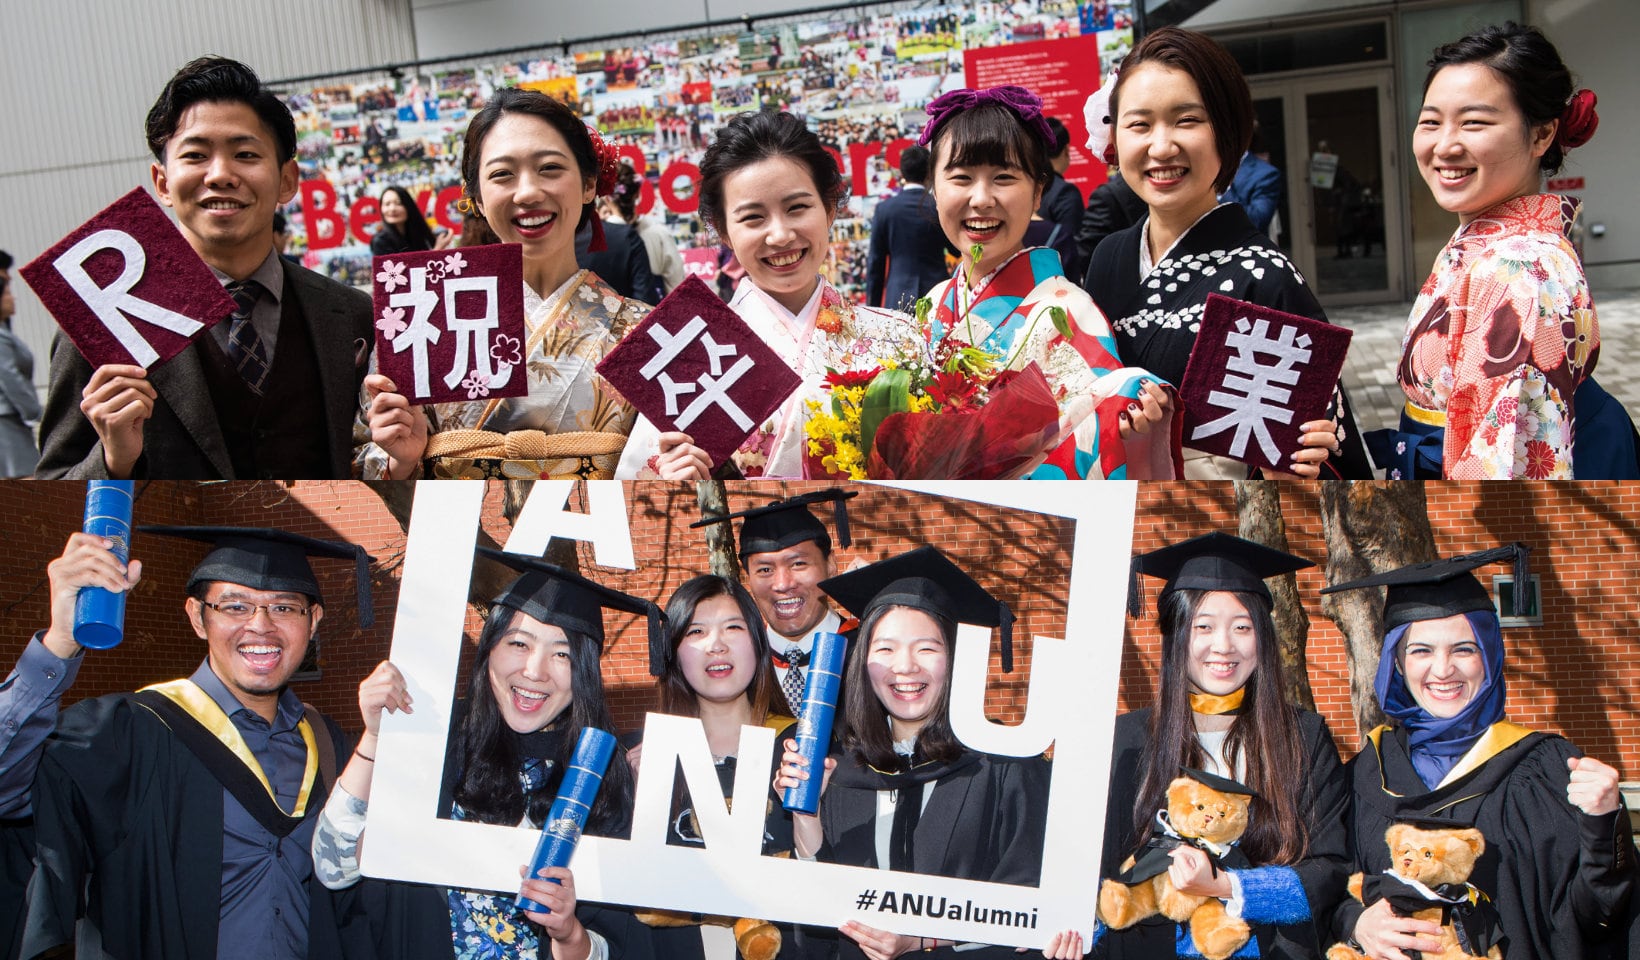 Groups of students at graduation at Ritsumeikan and ANU